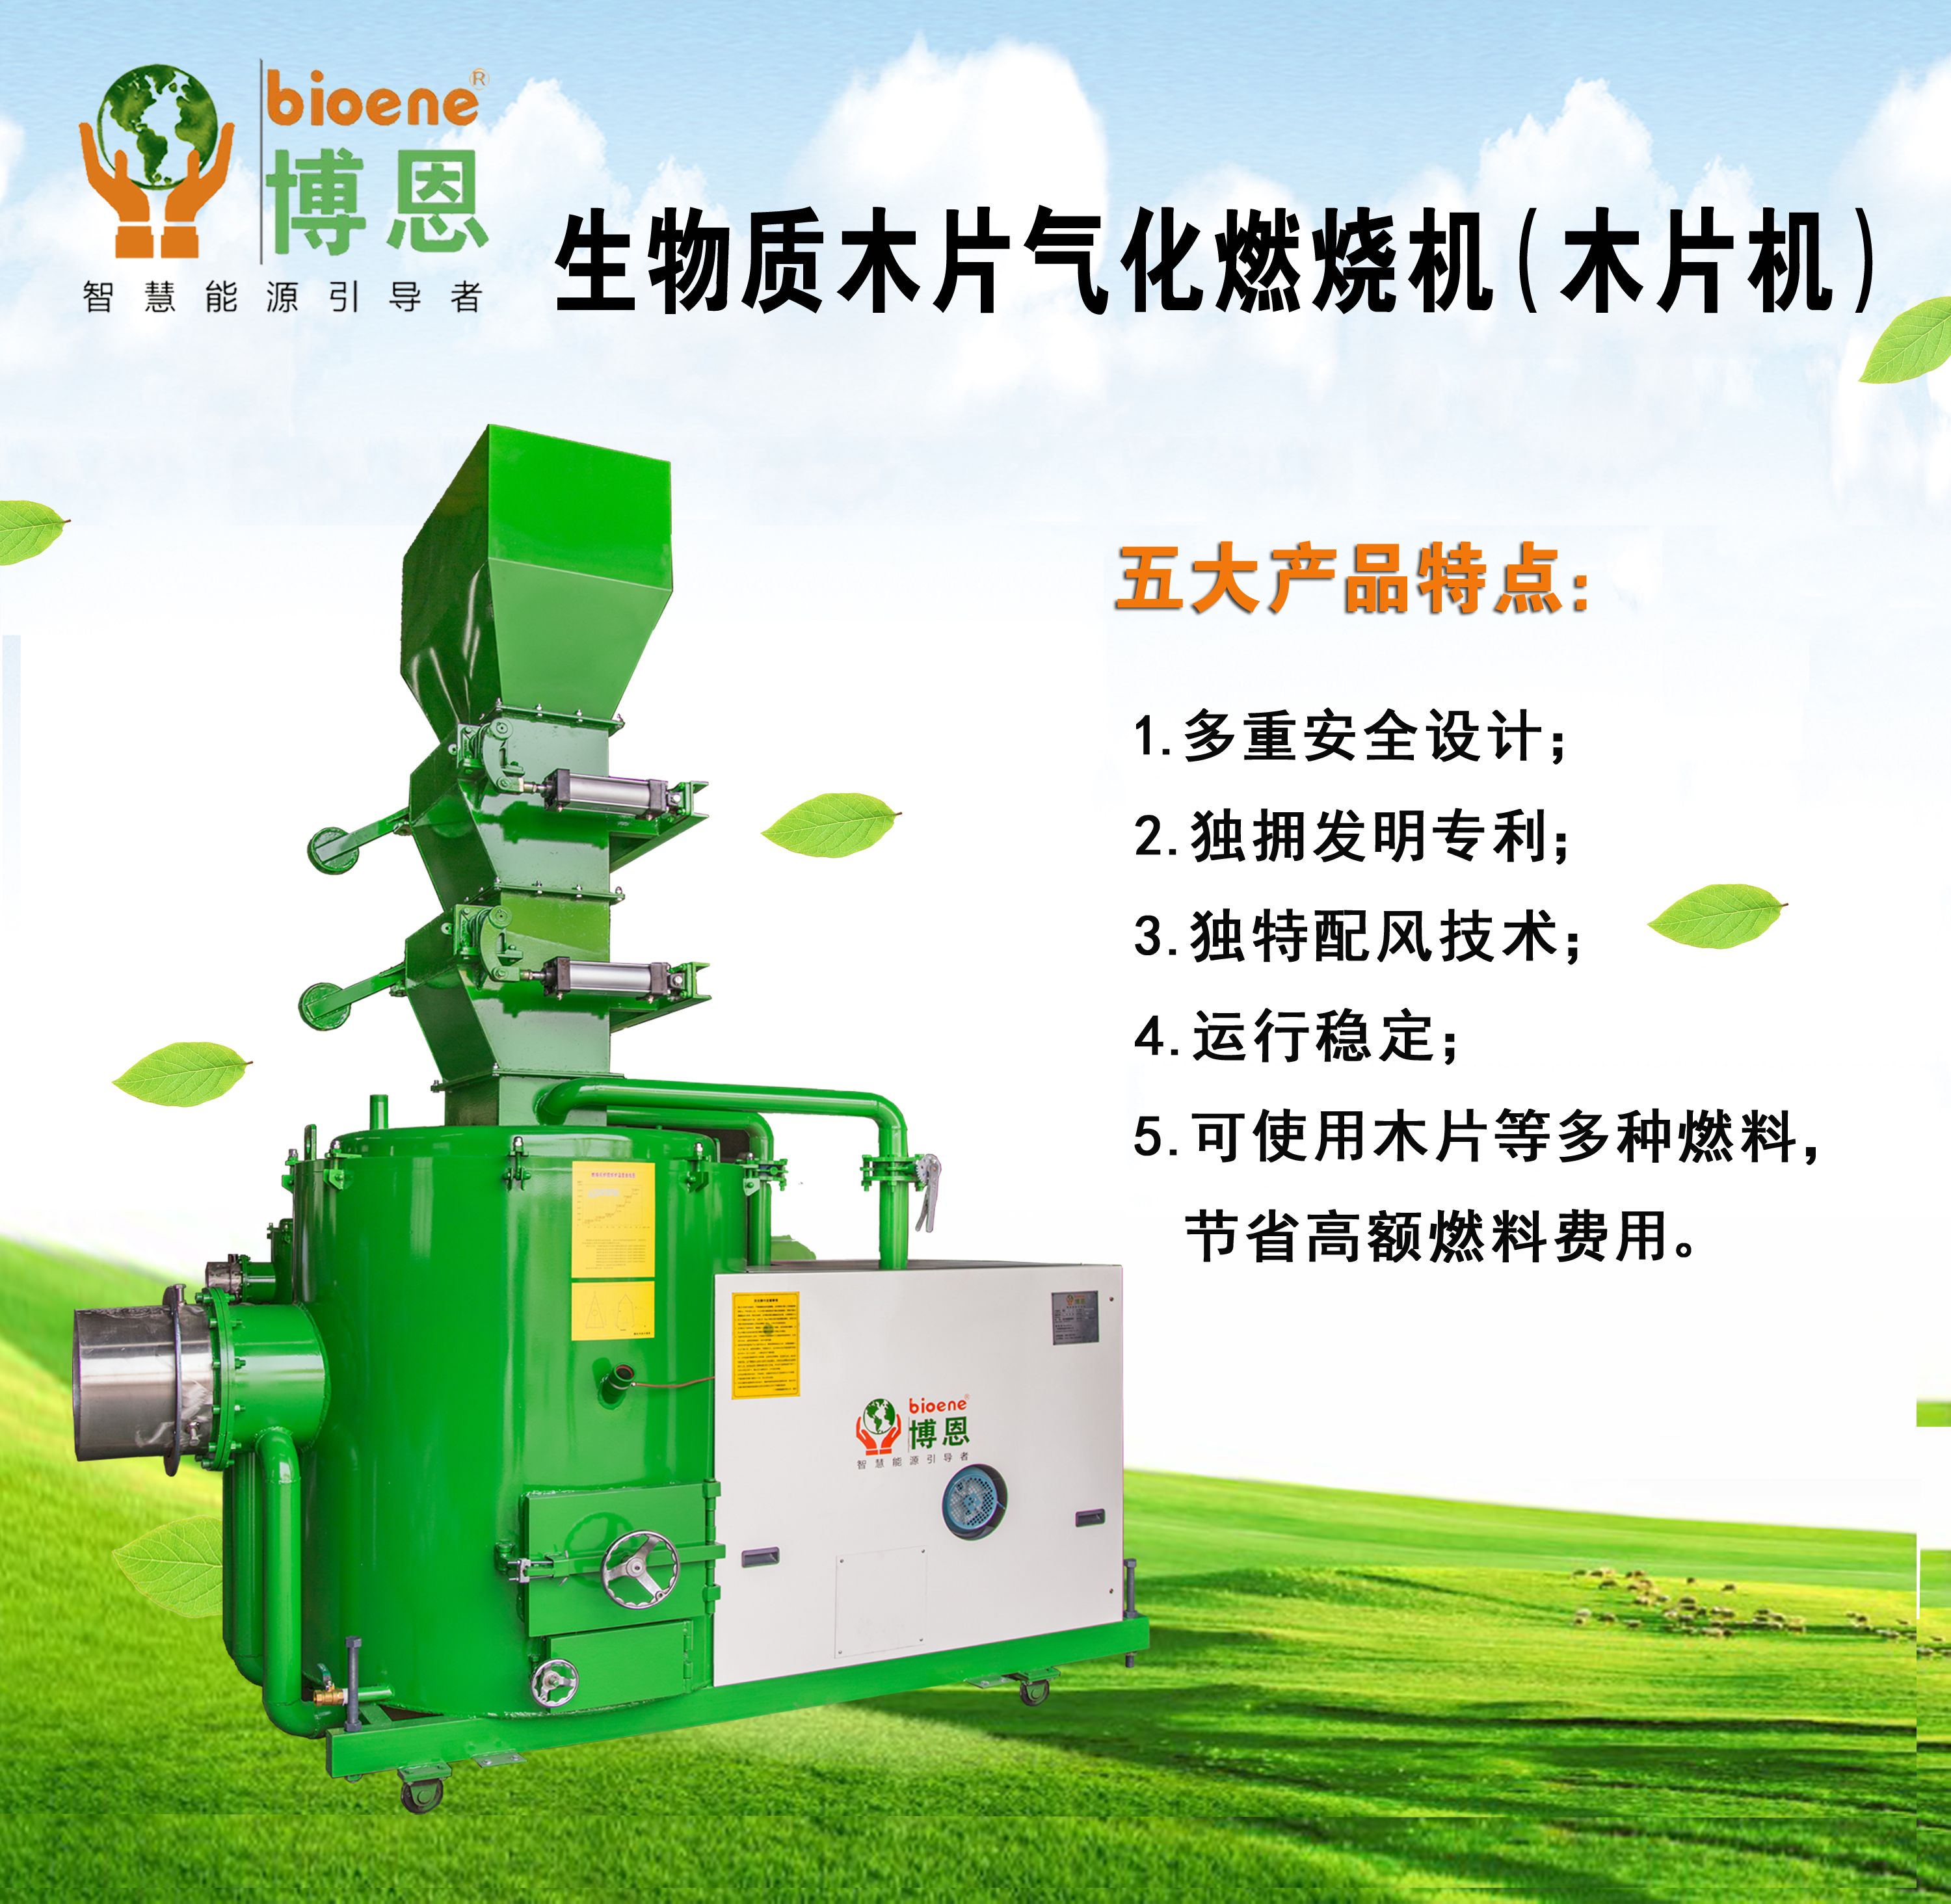 广州厂家批发铸造热处理设备生物质气化炉排放达标节能环保木质颗粒两用燃烧机